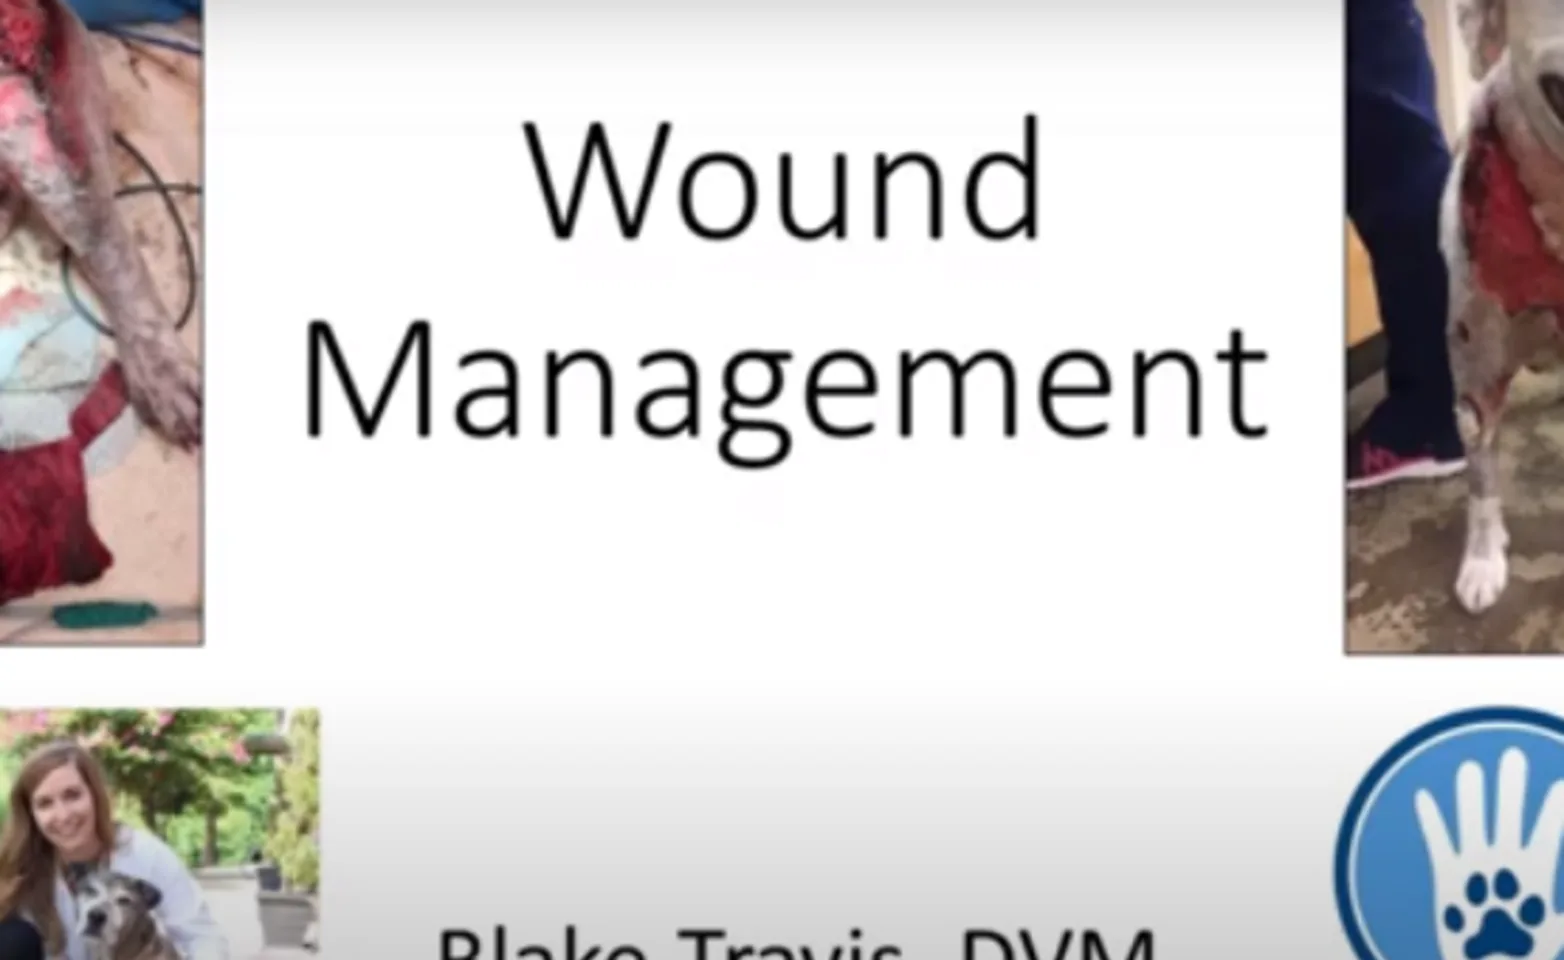 Wound Management Video